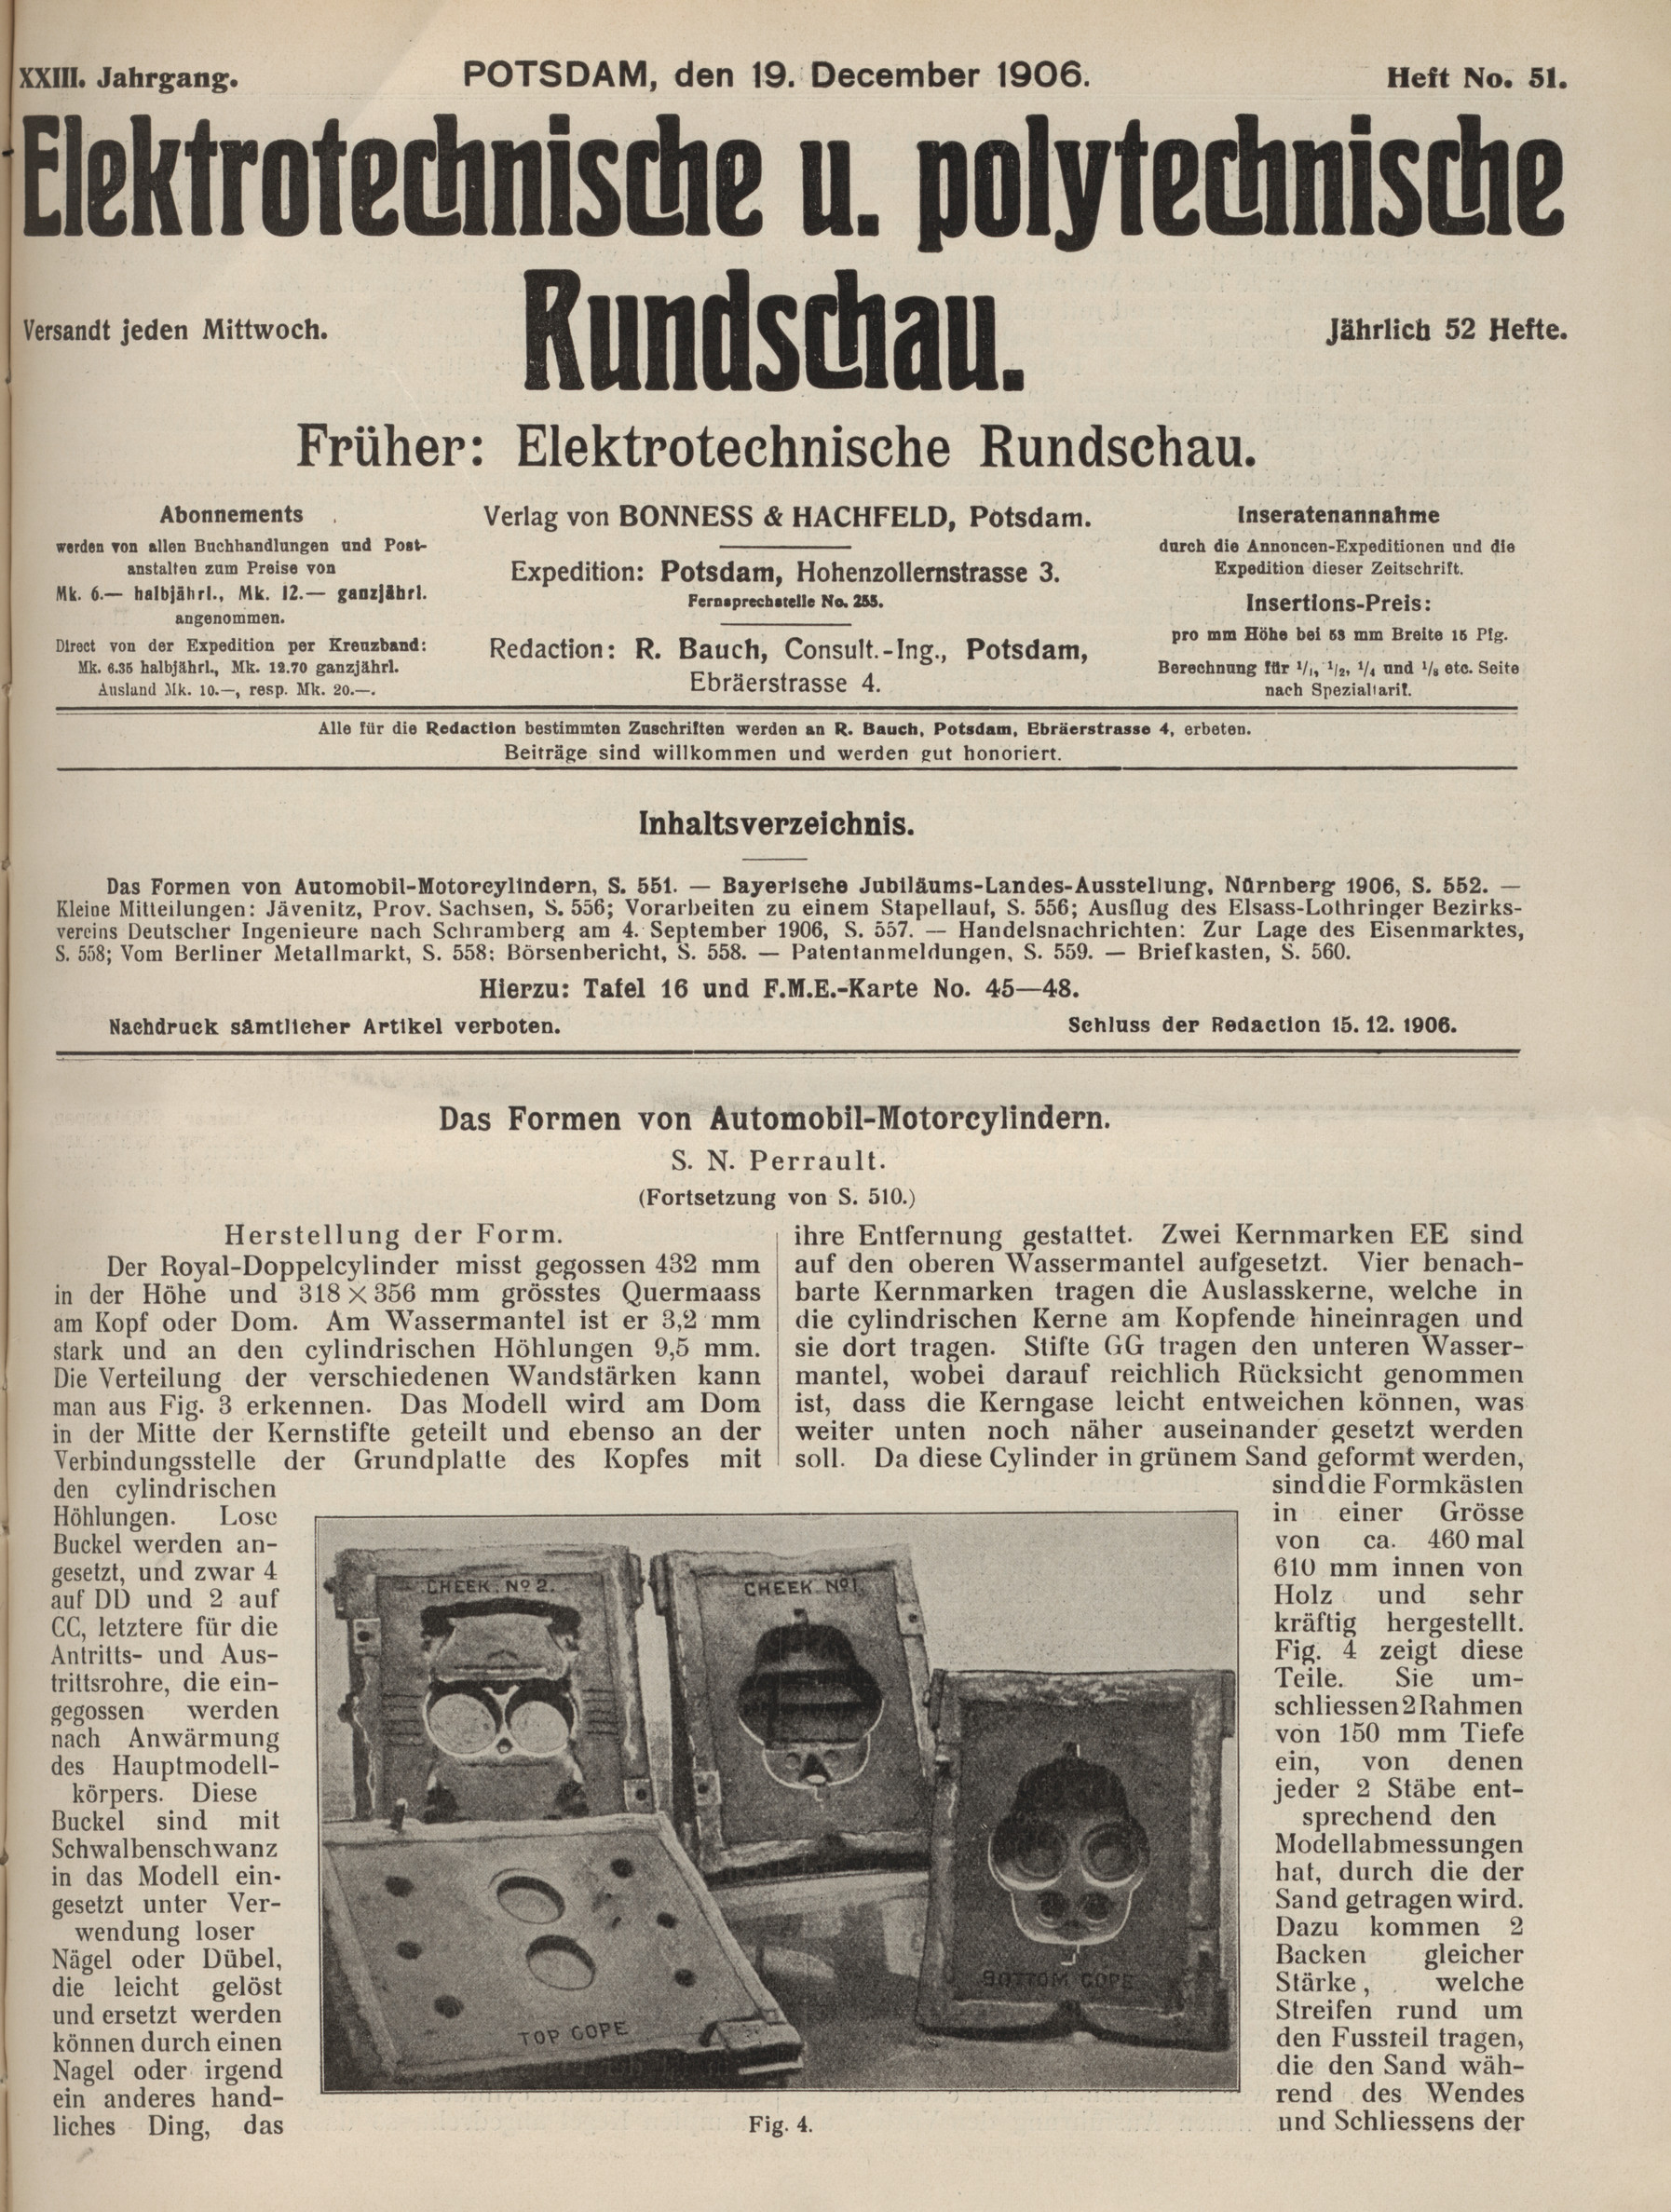 Elektrotechnische und polytechnische Rundschau, XXIII. Jahrgang, Heft No. 51